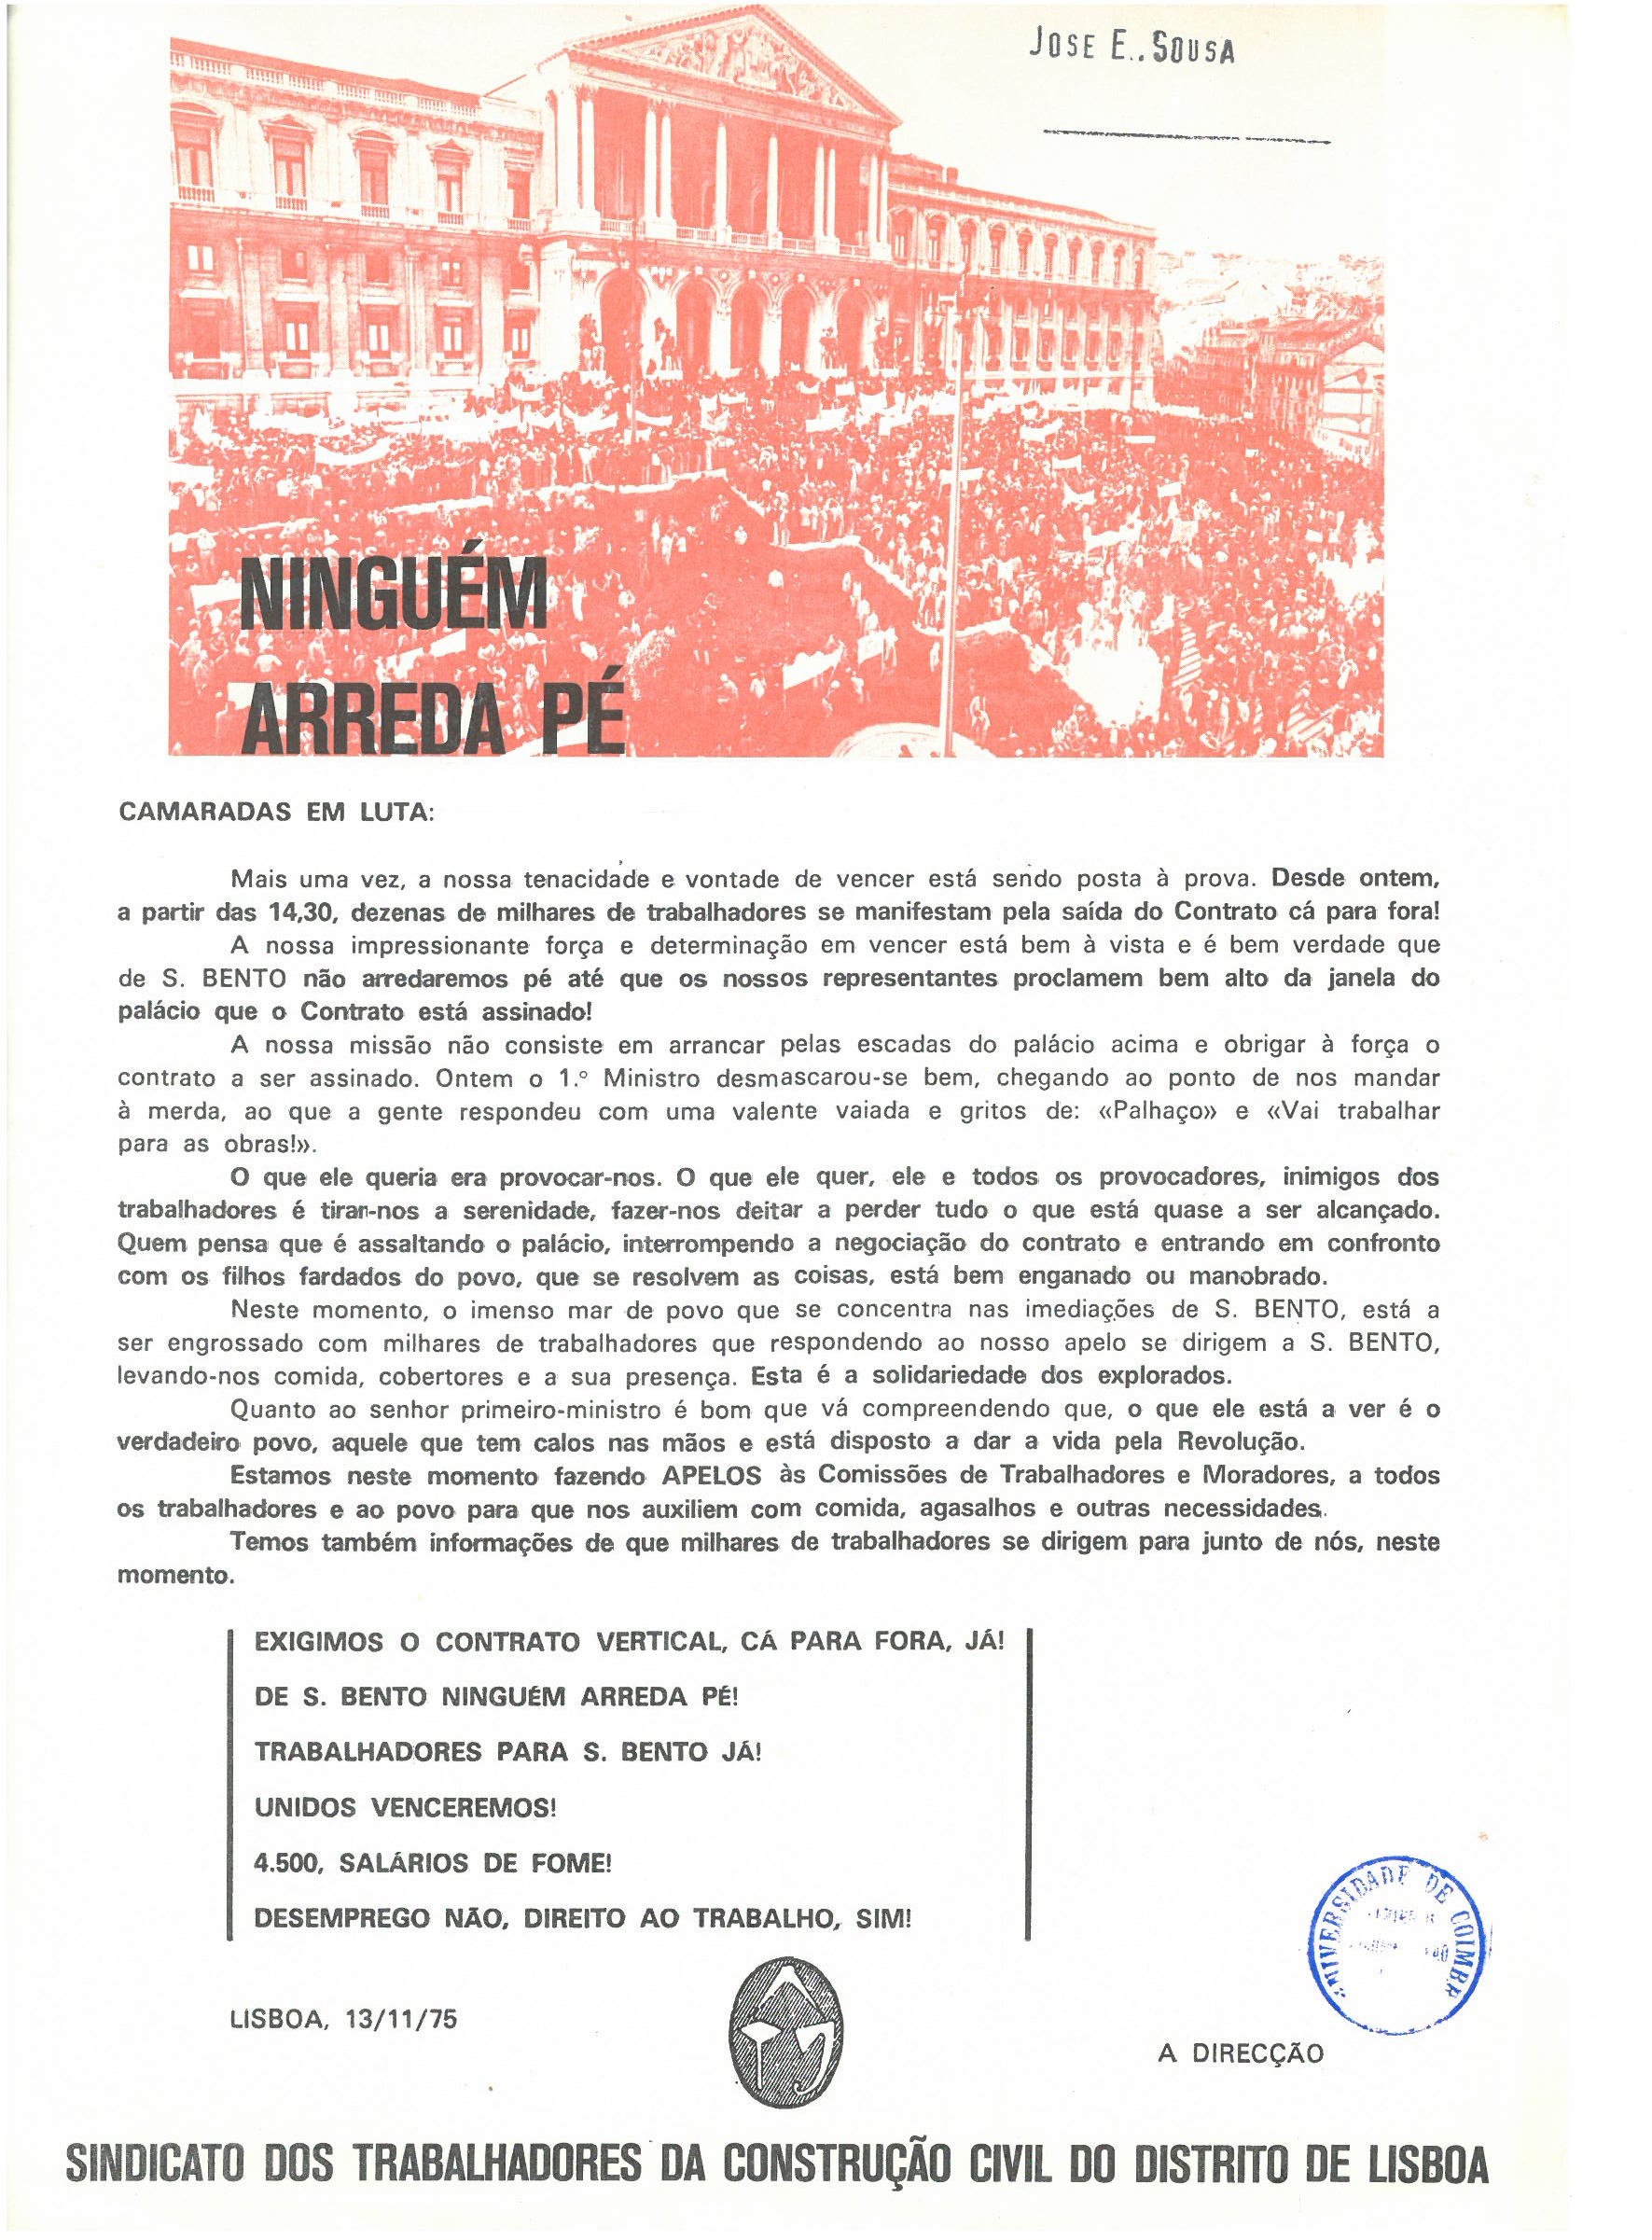 Sindicato dos Trabalhadores da Construção Civil do Distrito de Lisboa, "Ninguém arreda pé" (novembro de 1975)